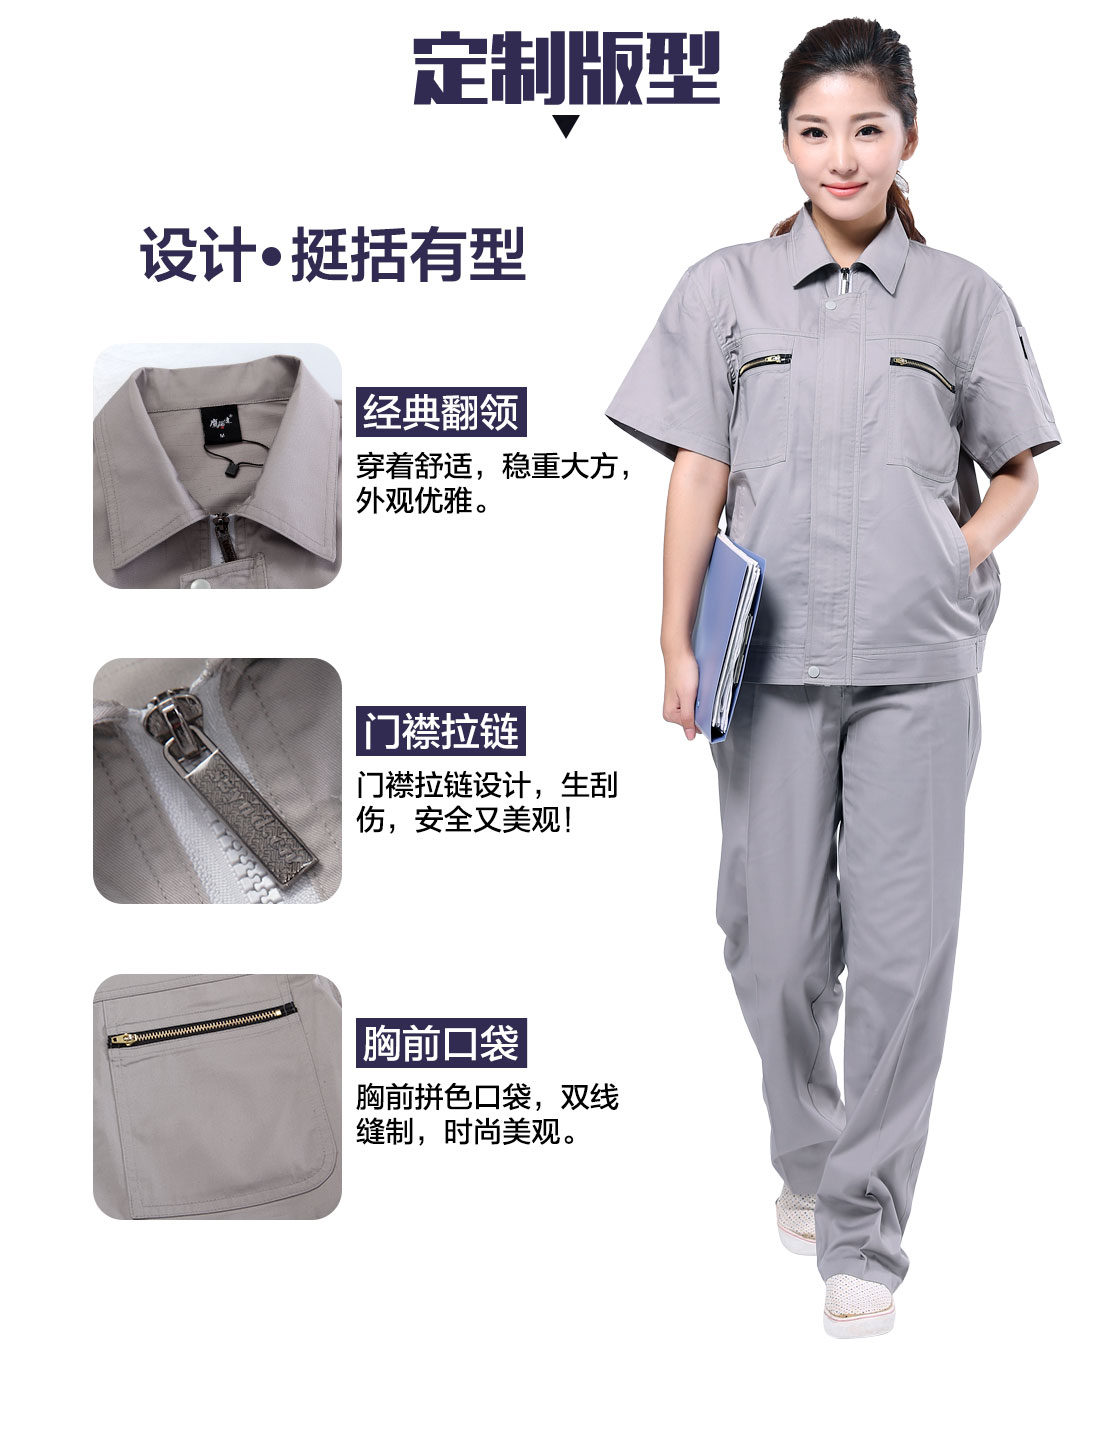 透气高棉短袖工作服的设计版型